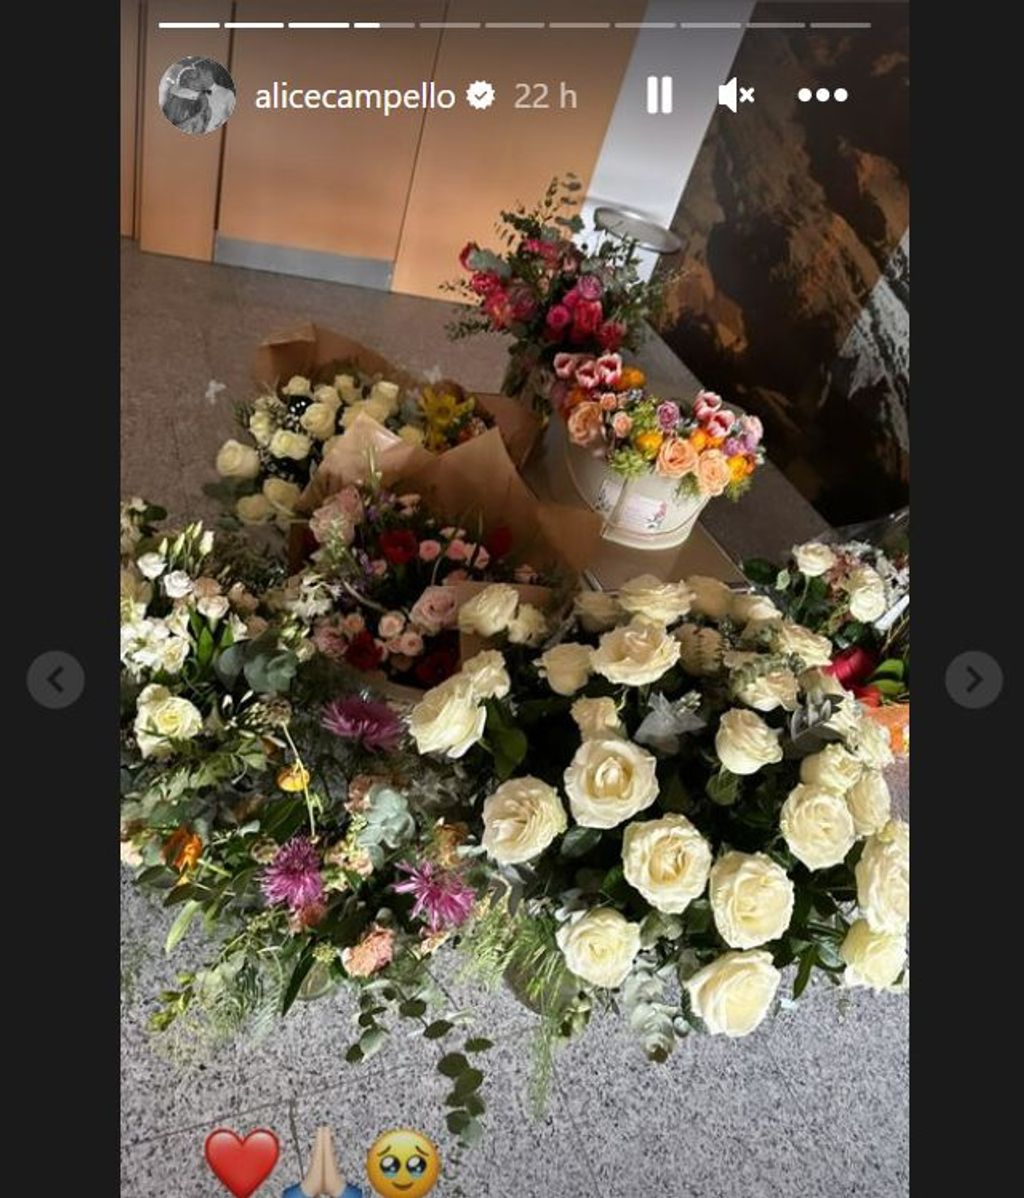 Las flores que ha recibido Alice Campello